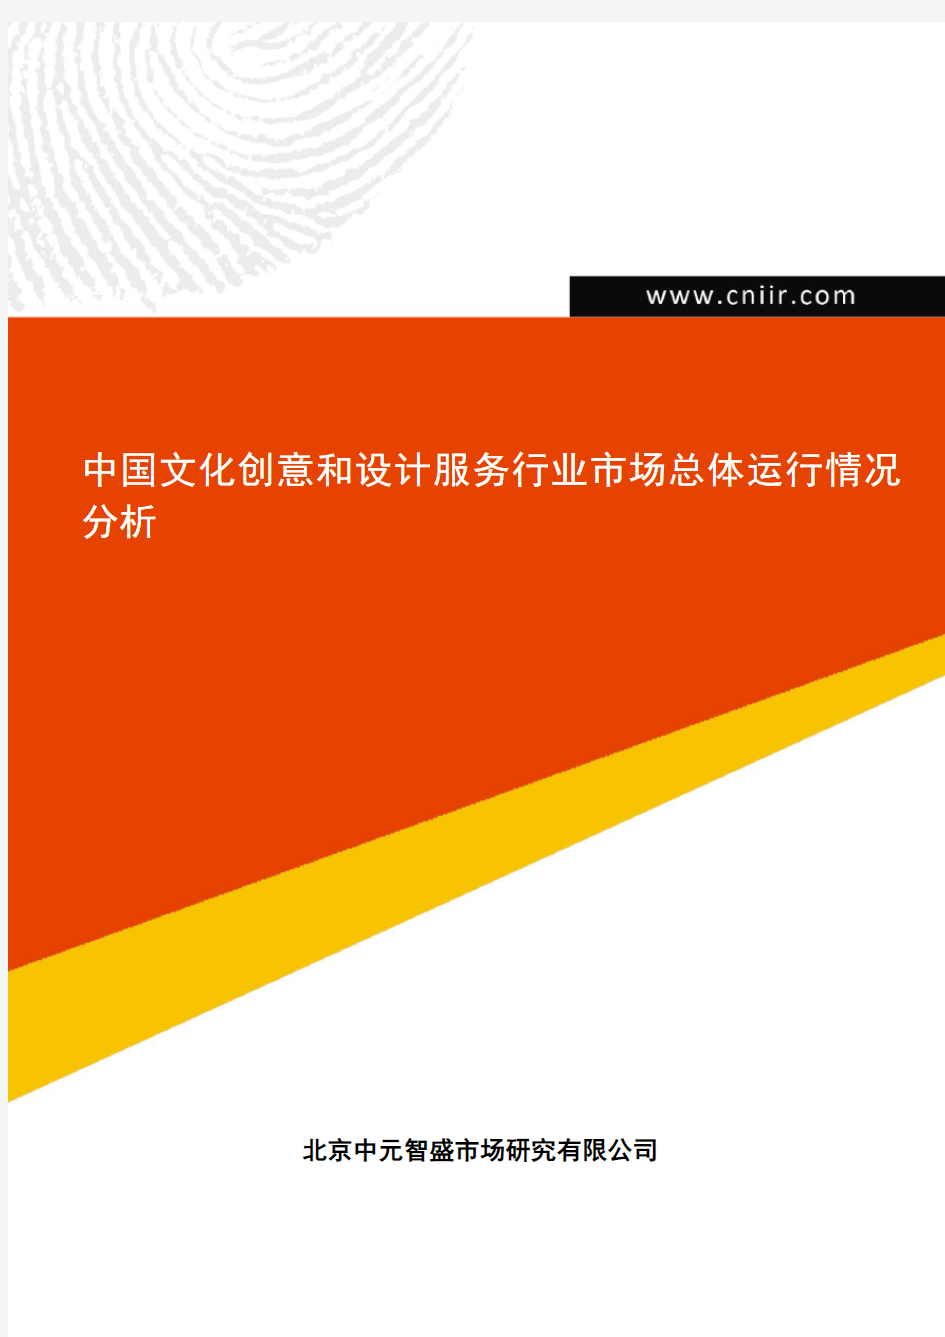 中国文化创意和设计服务行业市场总体运行情况分析